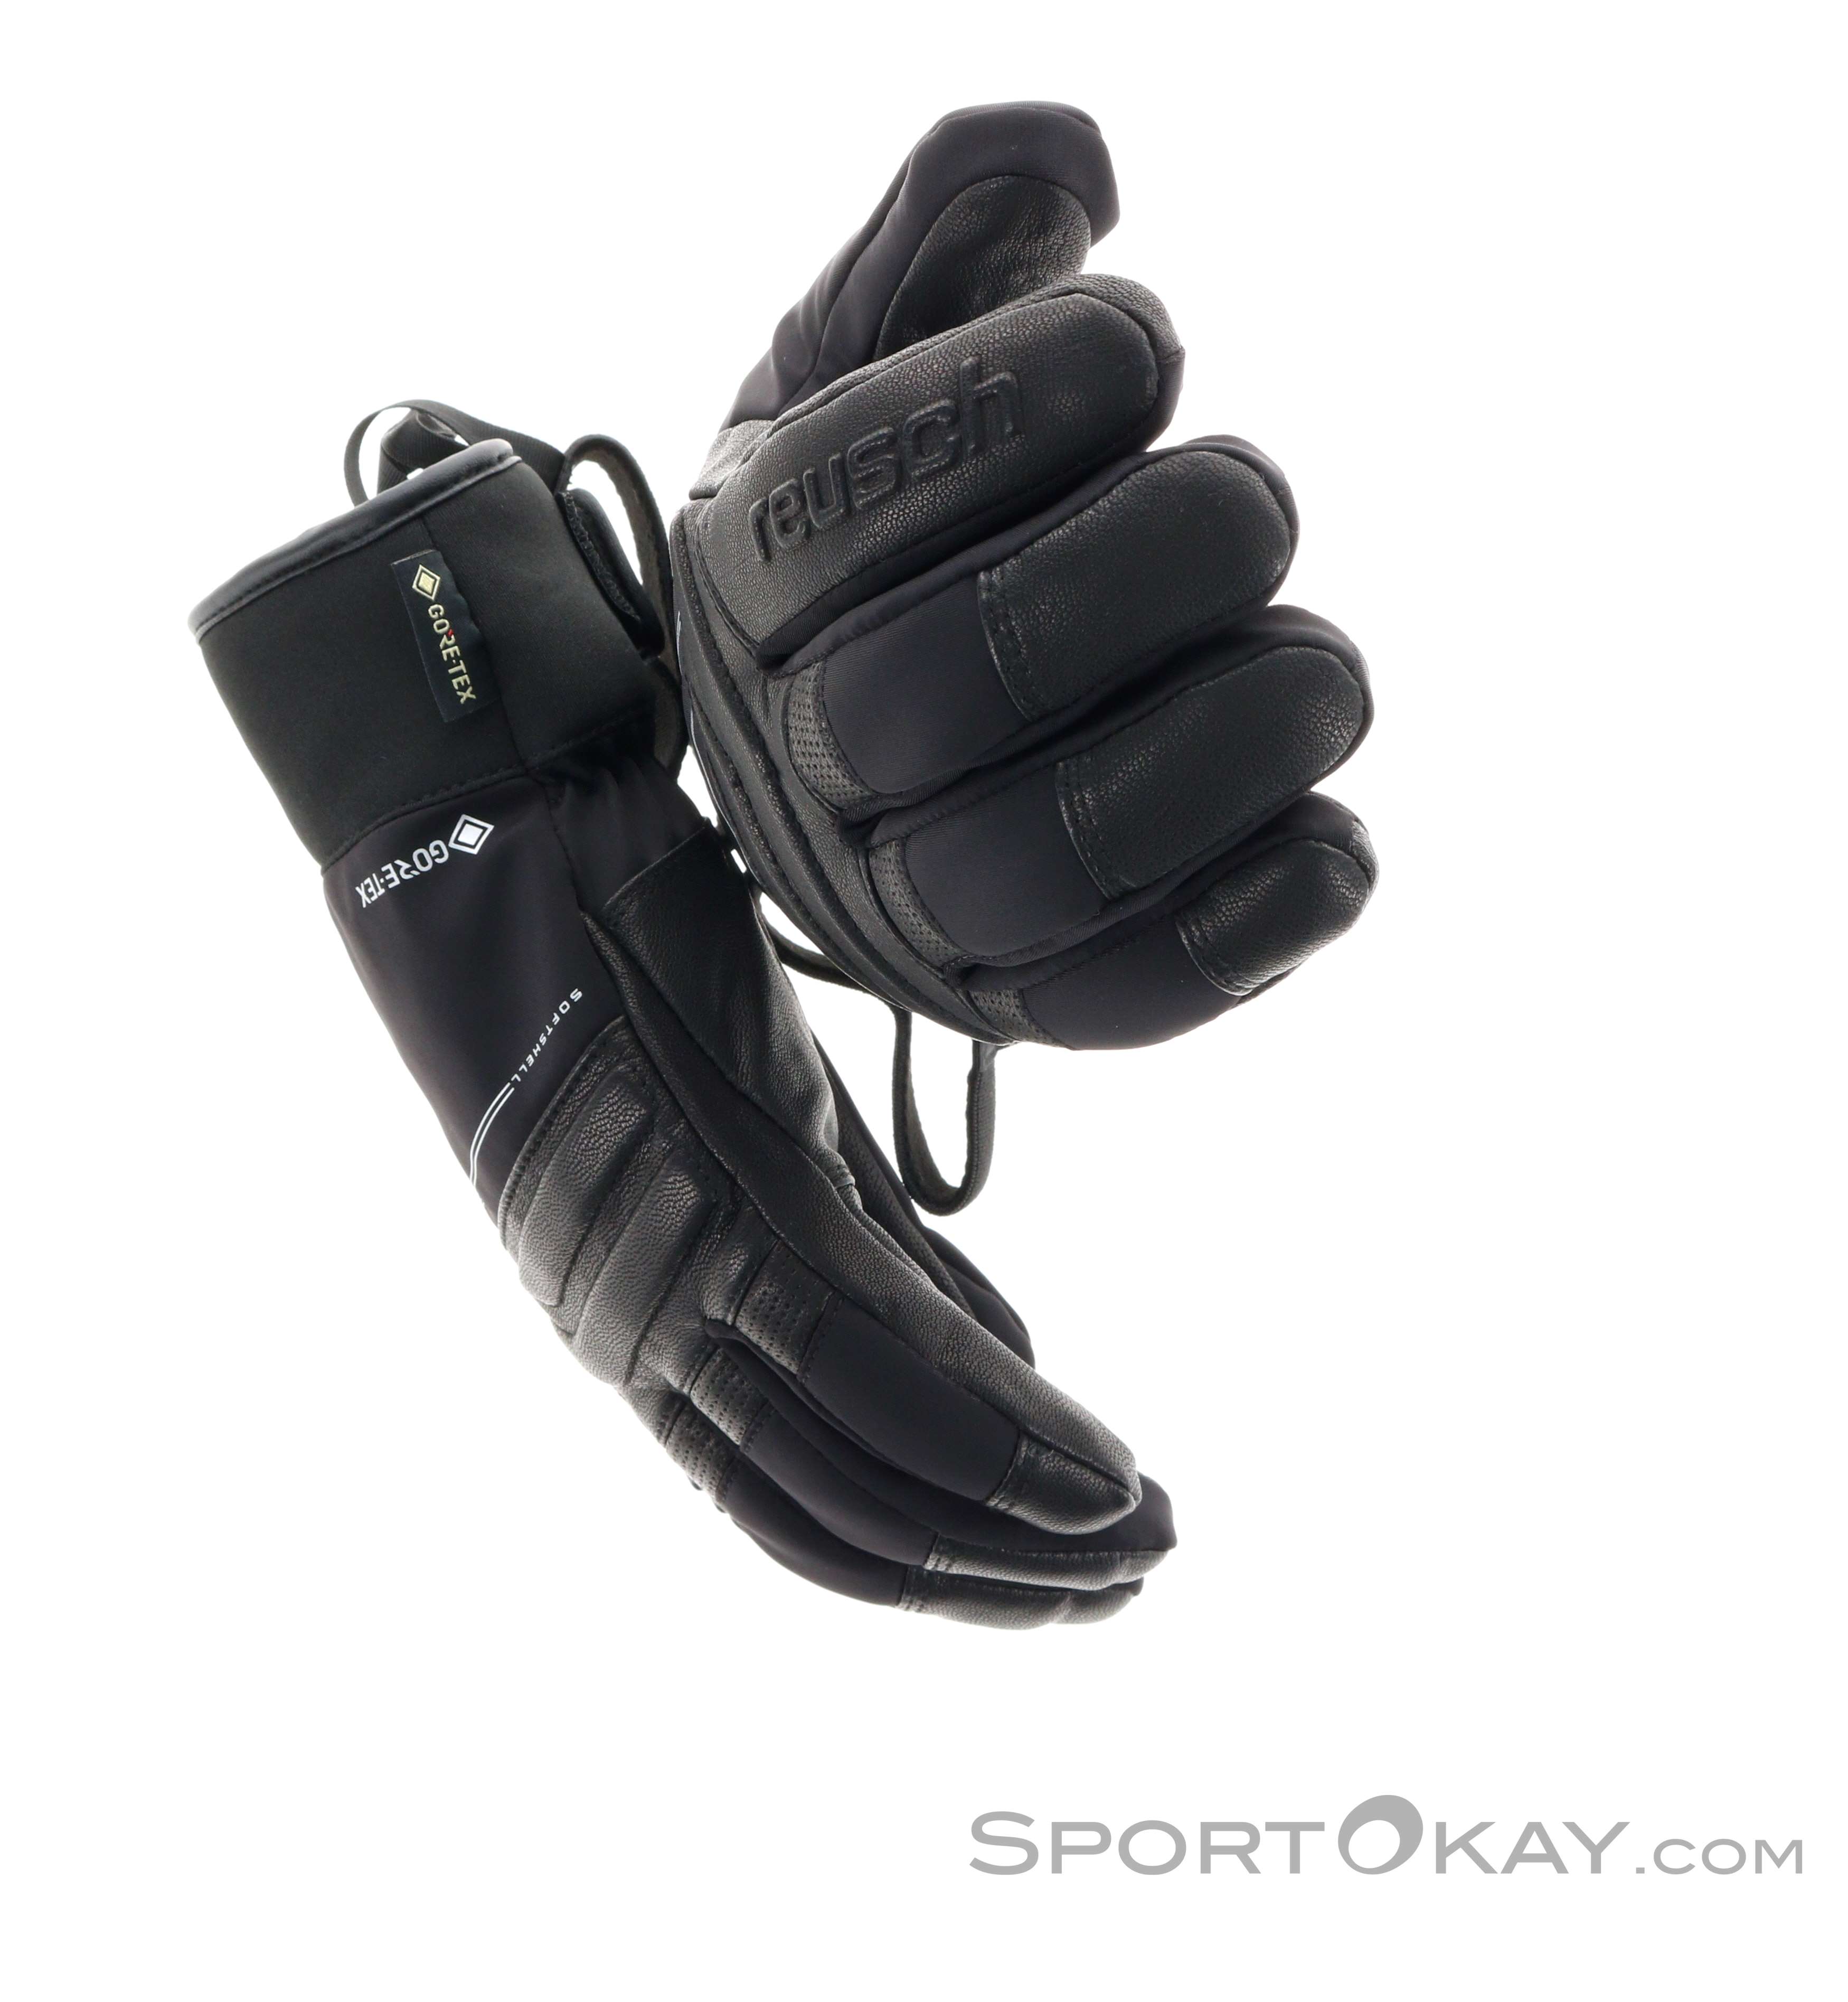 Reusch Jupiter Handschuhe - - Gore-Tex GTX Outdoor Alle - - Outdoorbekleidung Handschuhe